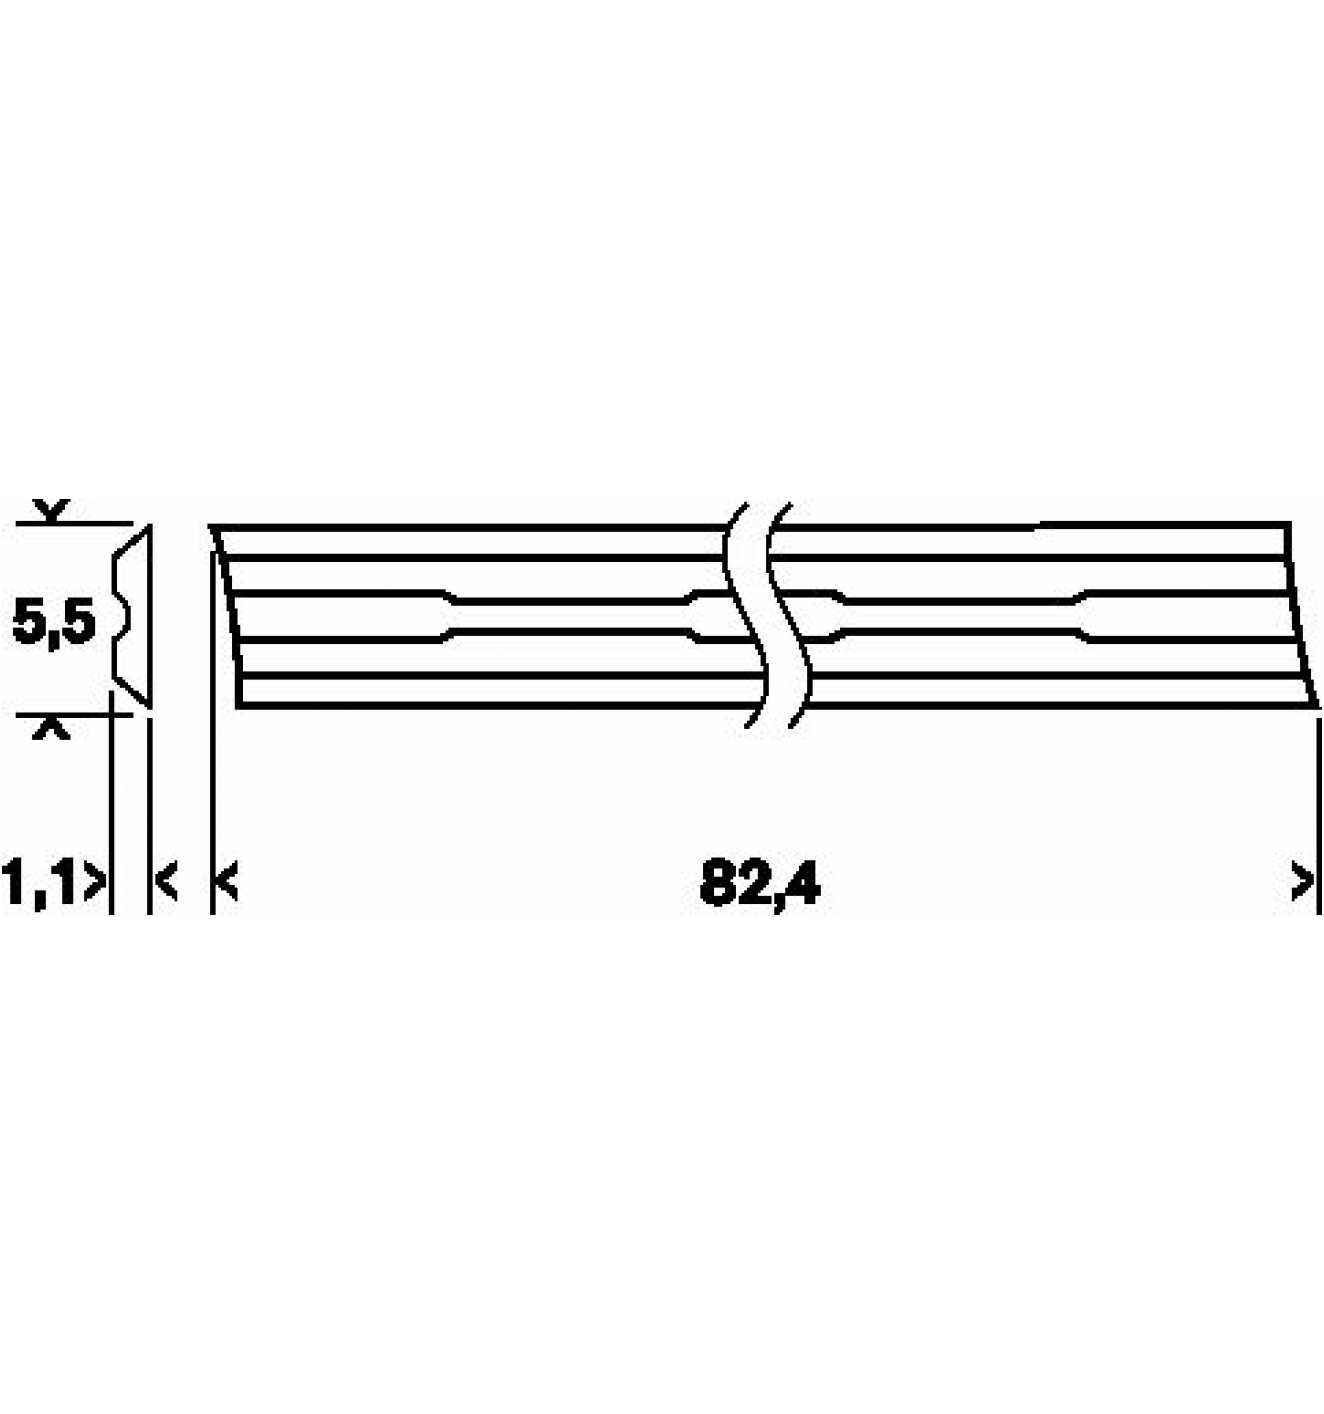 Bosch Hobelmesser gerade, 40°, 5.5 HM, x Reidl.de mm, online - 2er-Pack kaufen bei 82.4